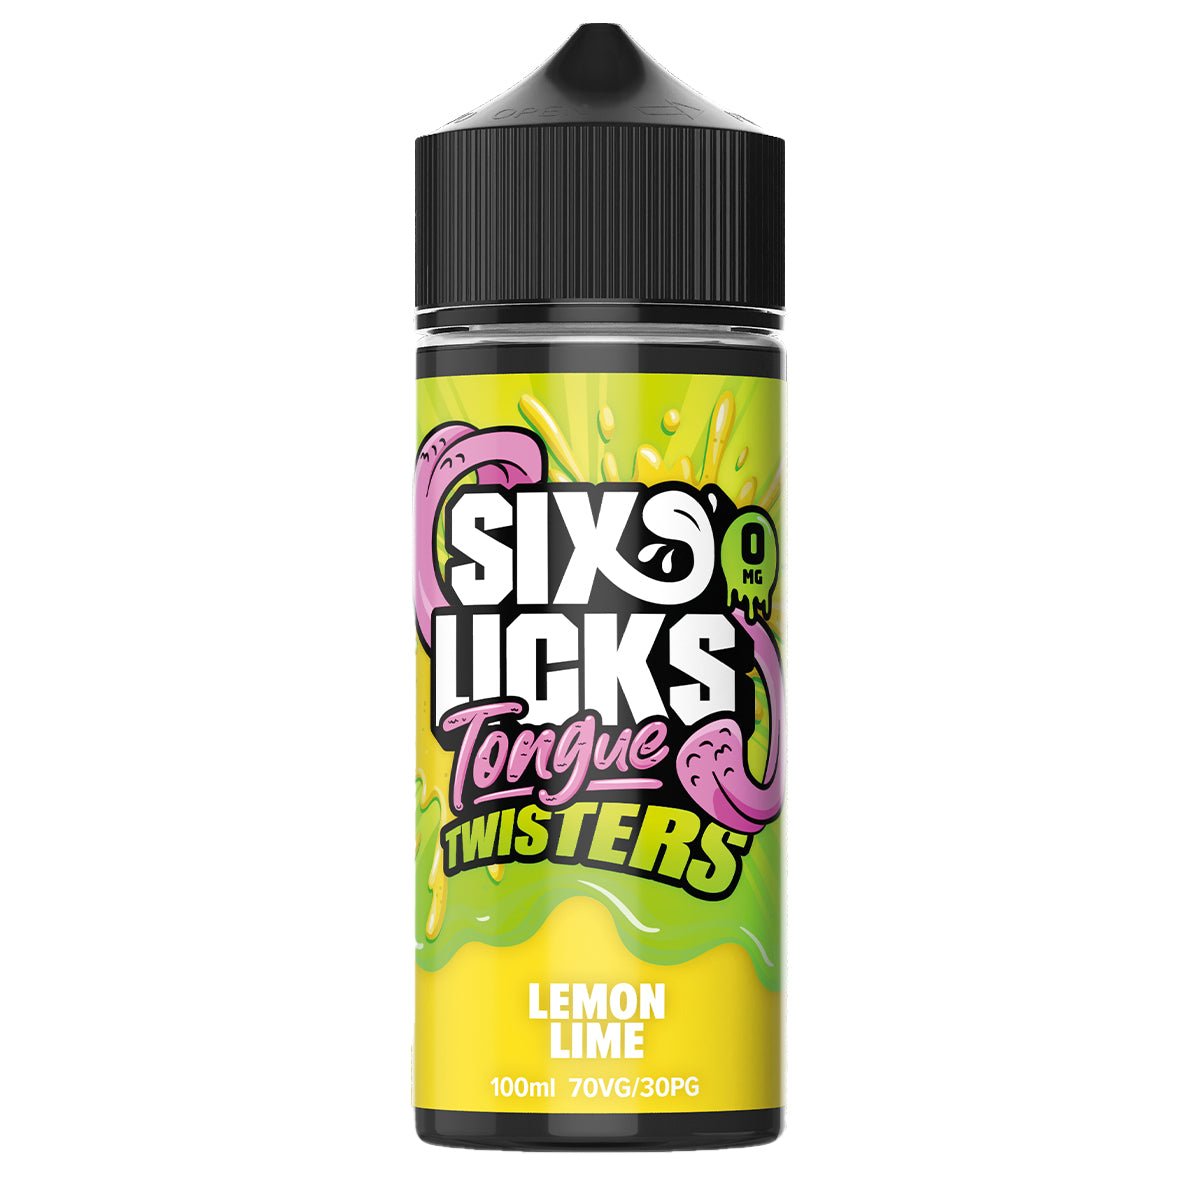 Lemon Lime Tongue Twisters 100ml Shortfill By Six Licks - Prime Vapes UK